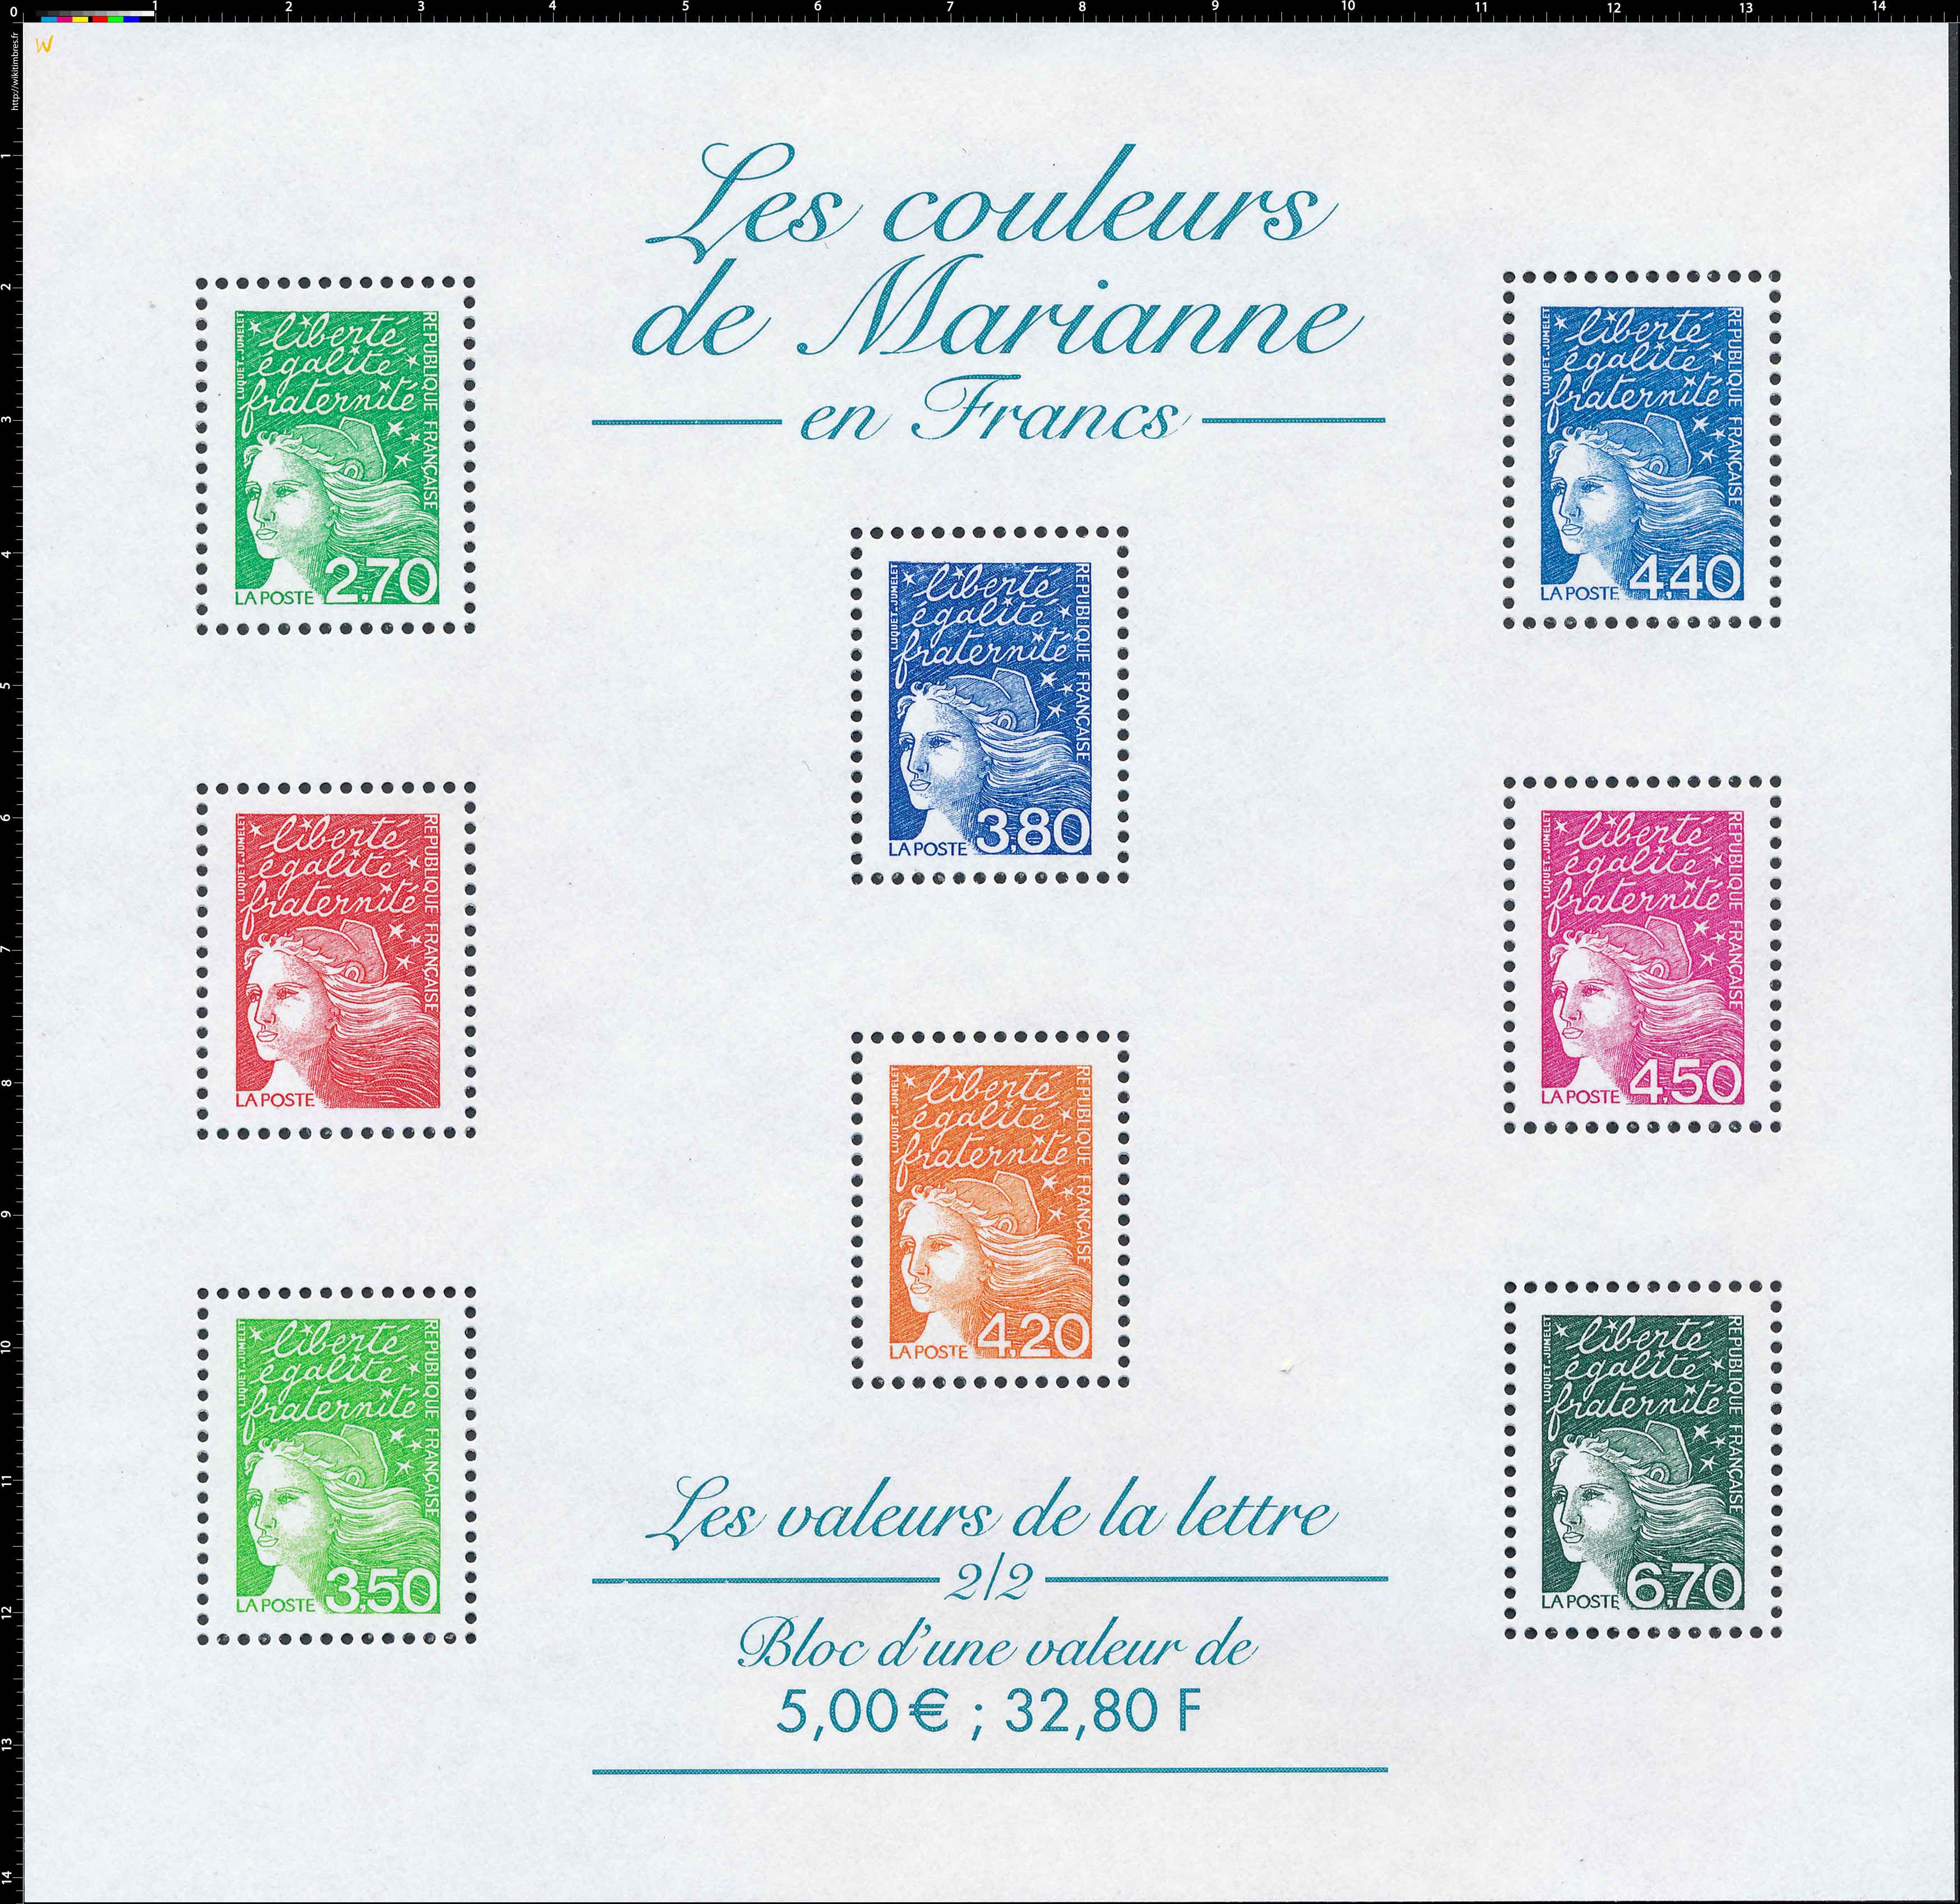 Les couleurs de Marianne en Francs